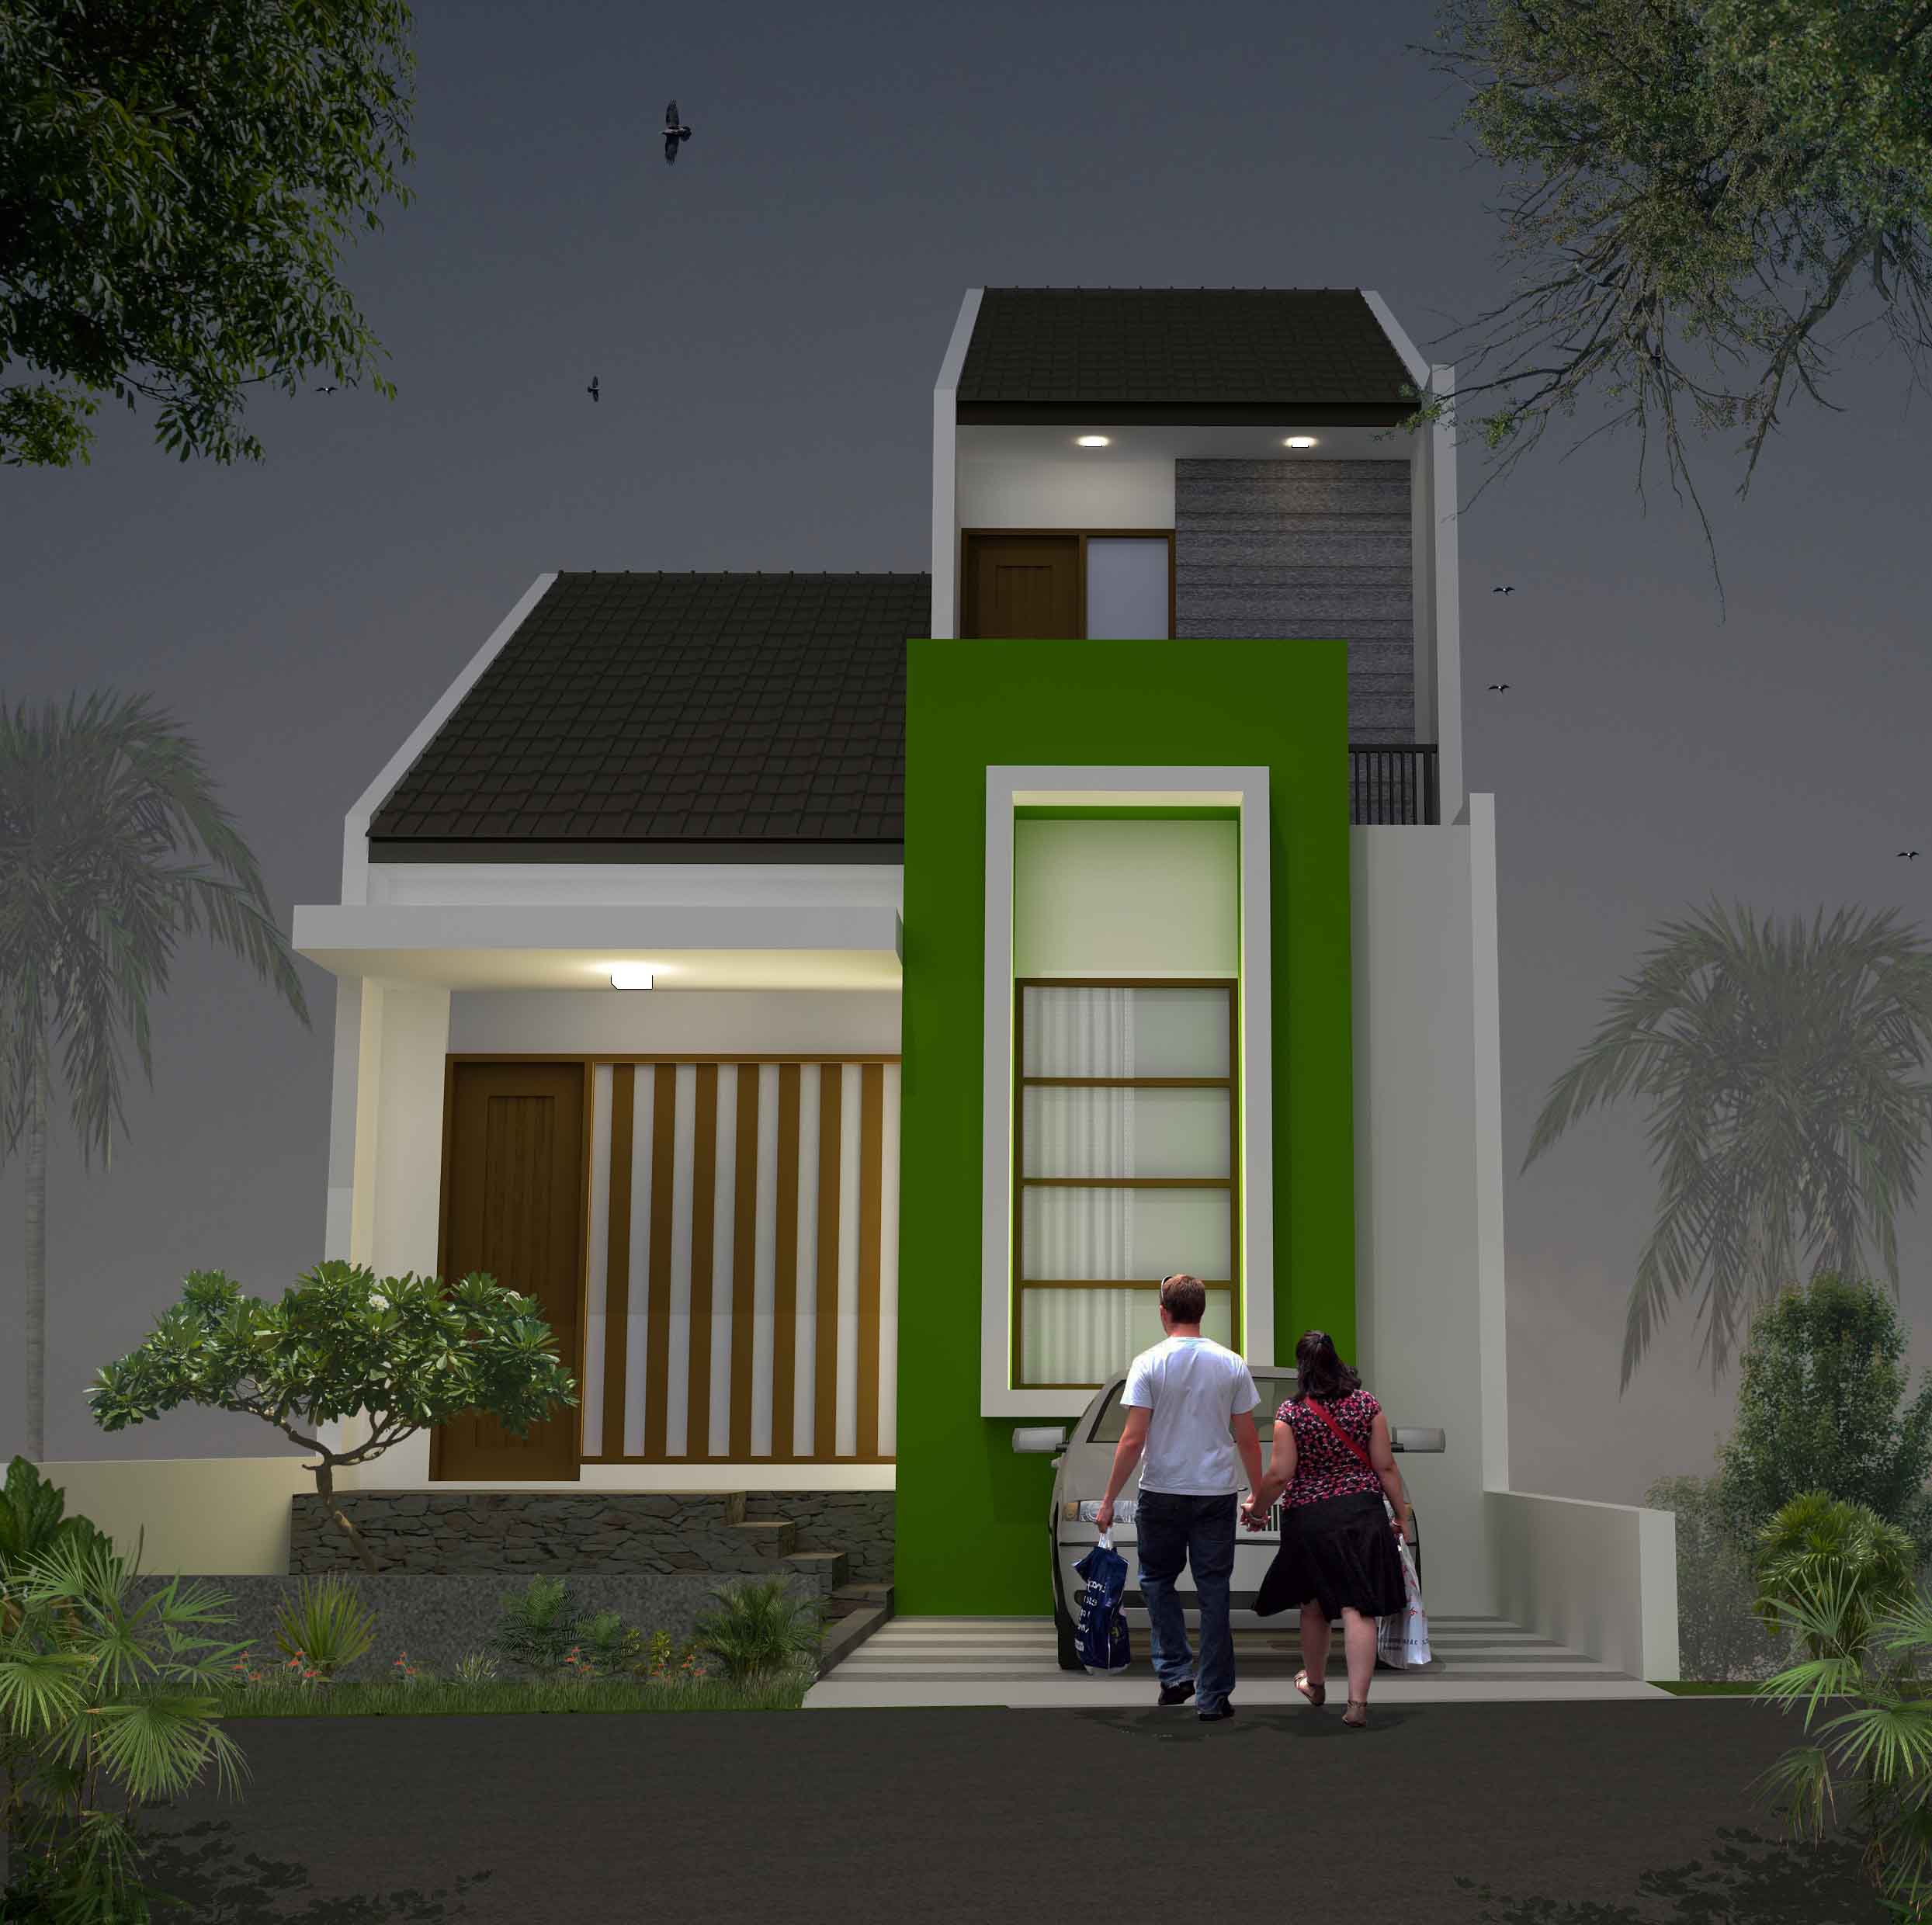 Gambar Desain Rumah Mungil Minimalis 2 Lantai 2015 Terbaru Desain